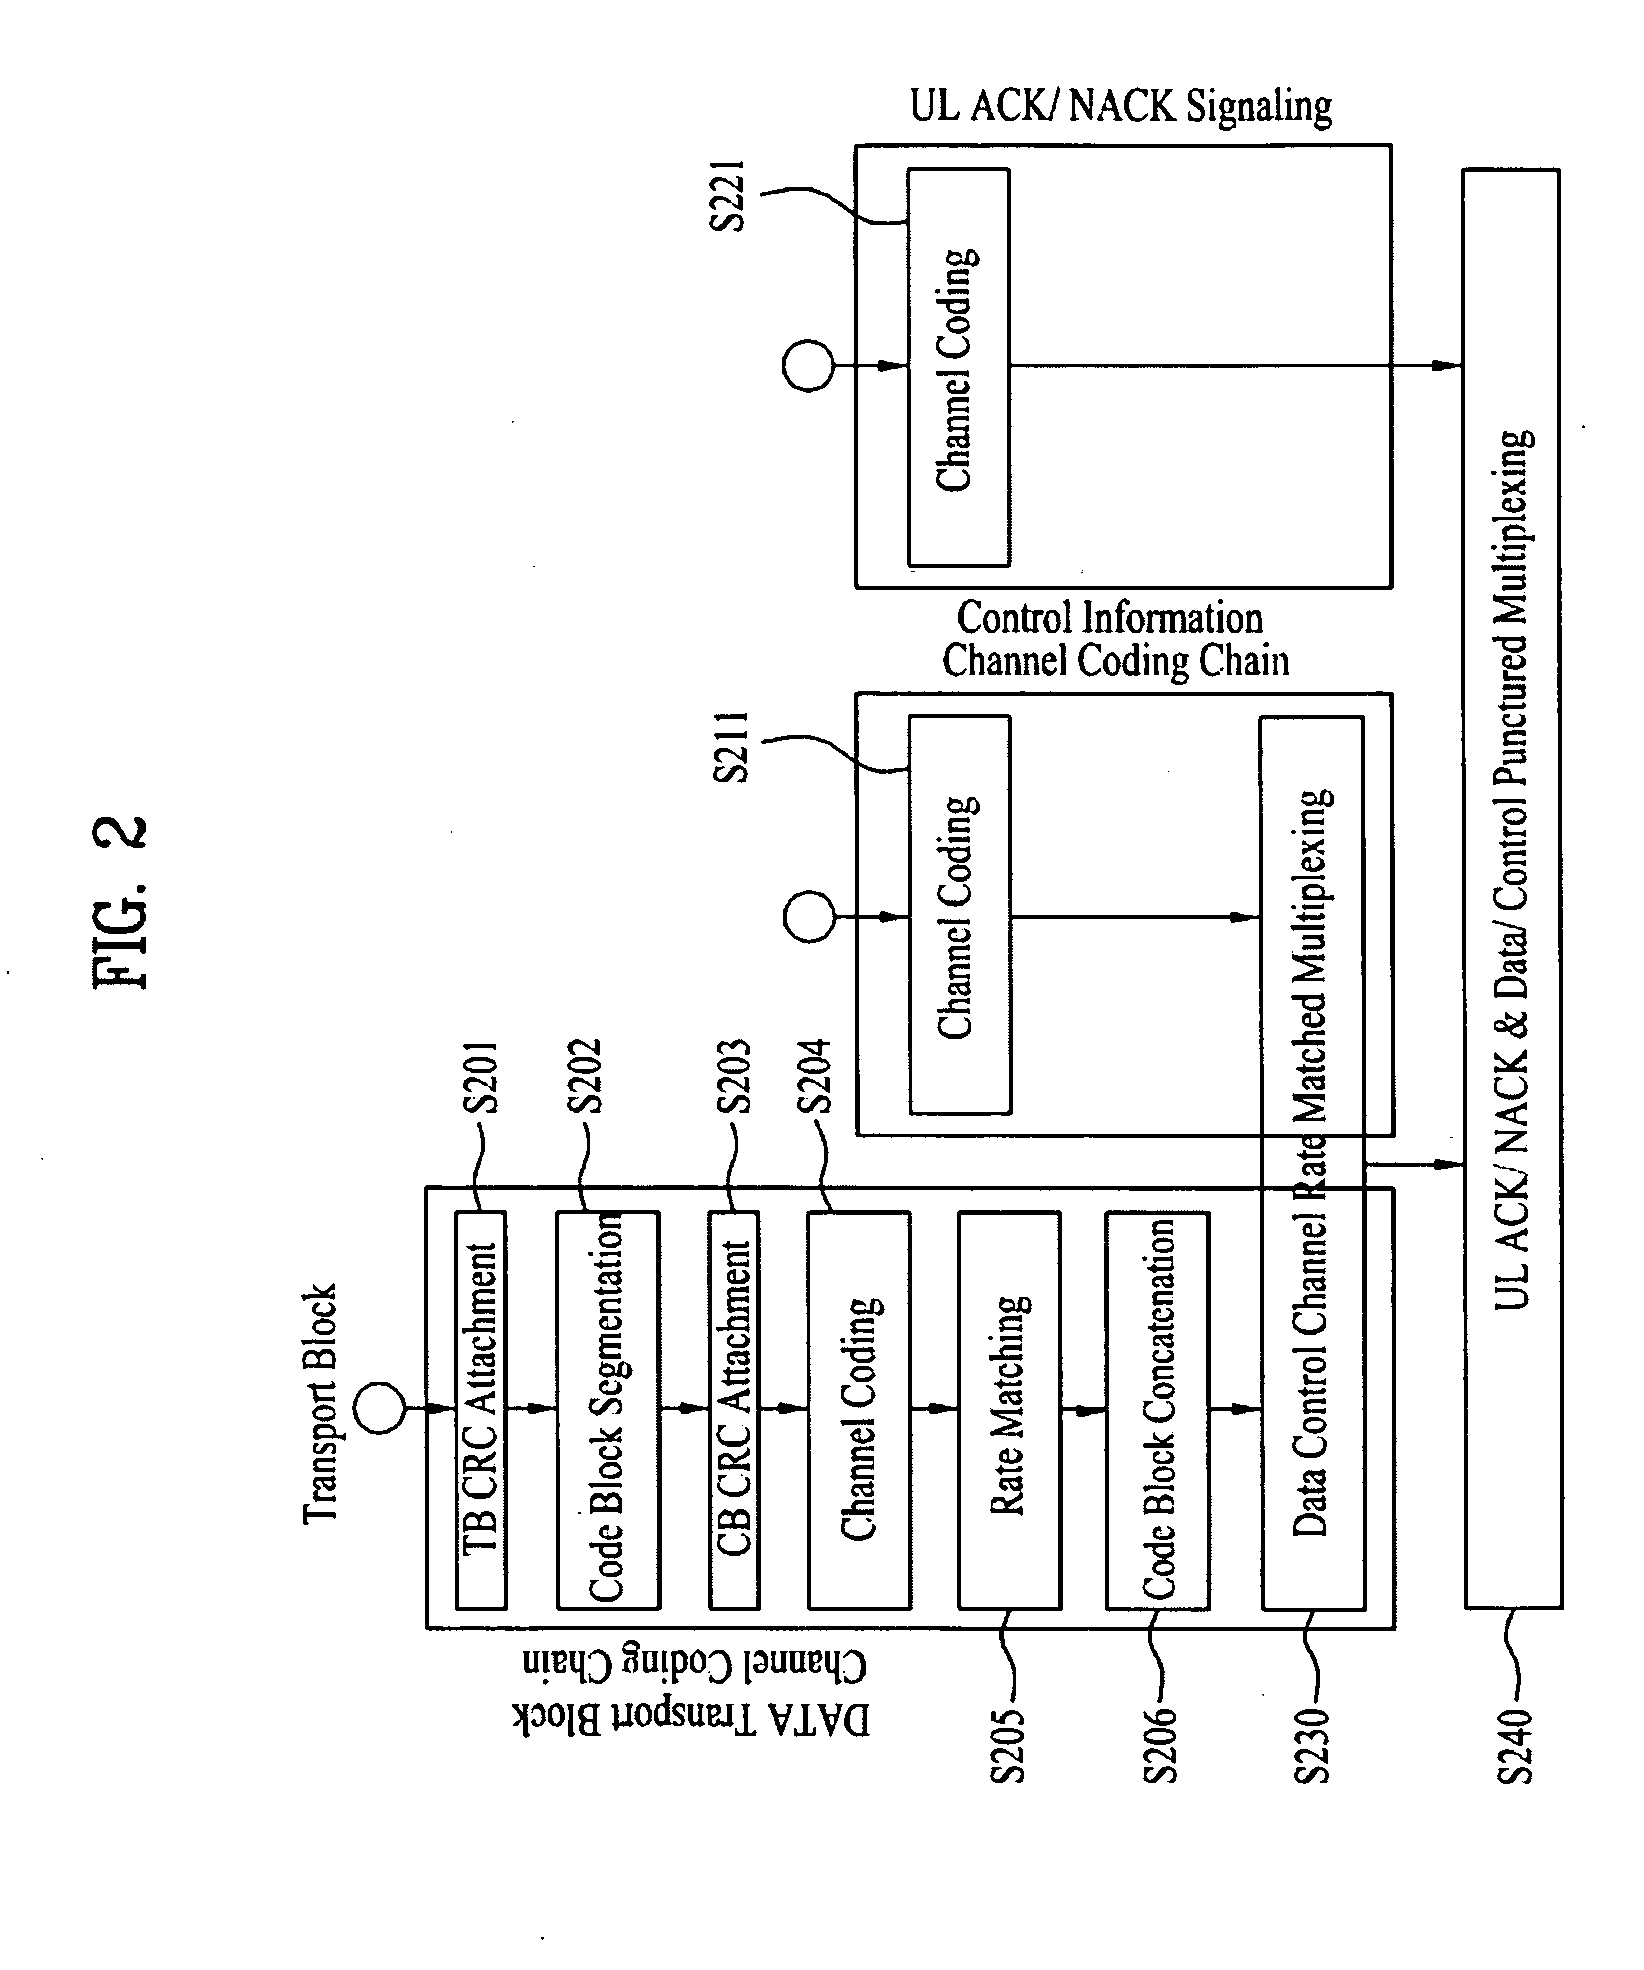 Method for transmitting uplink signals